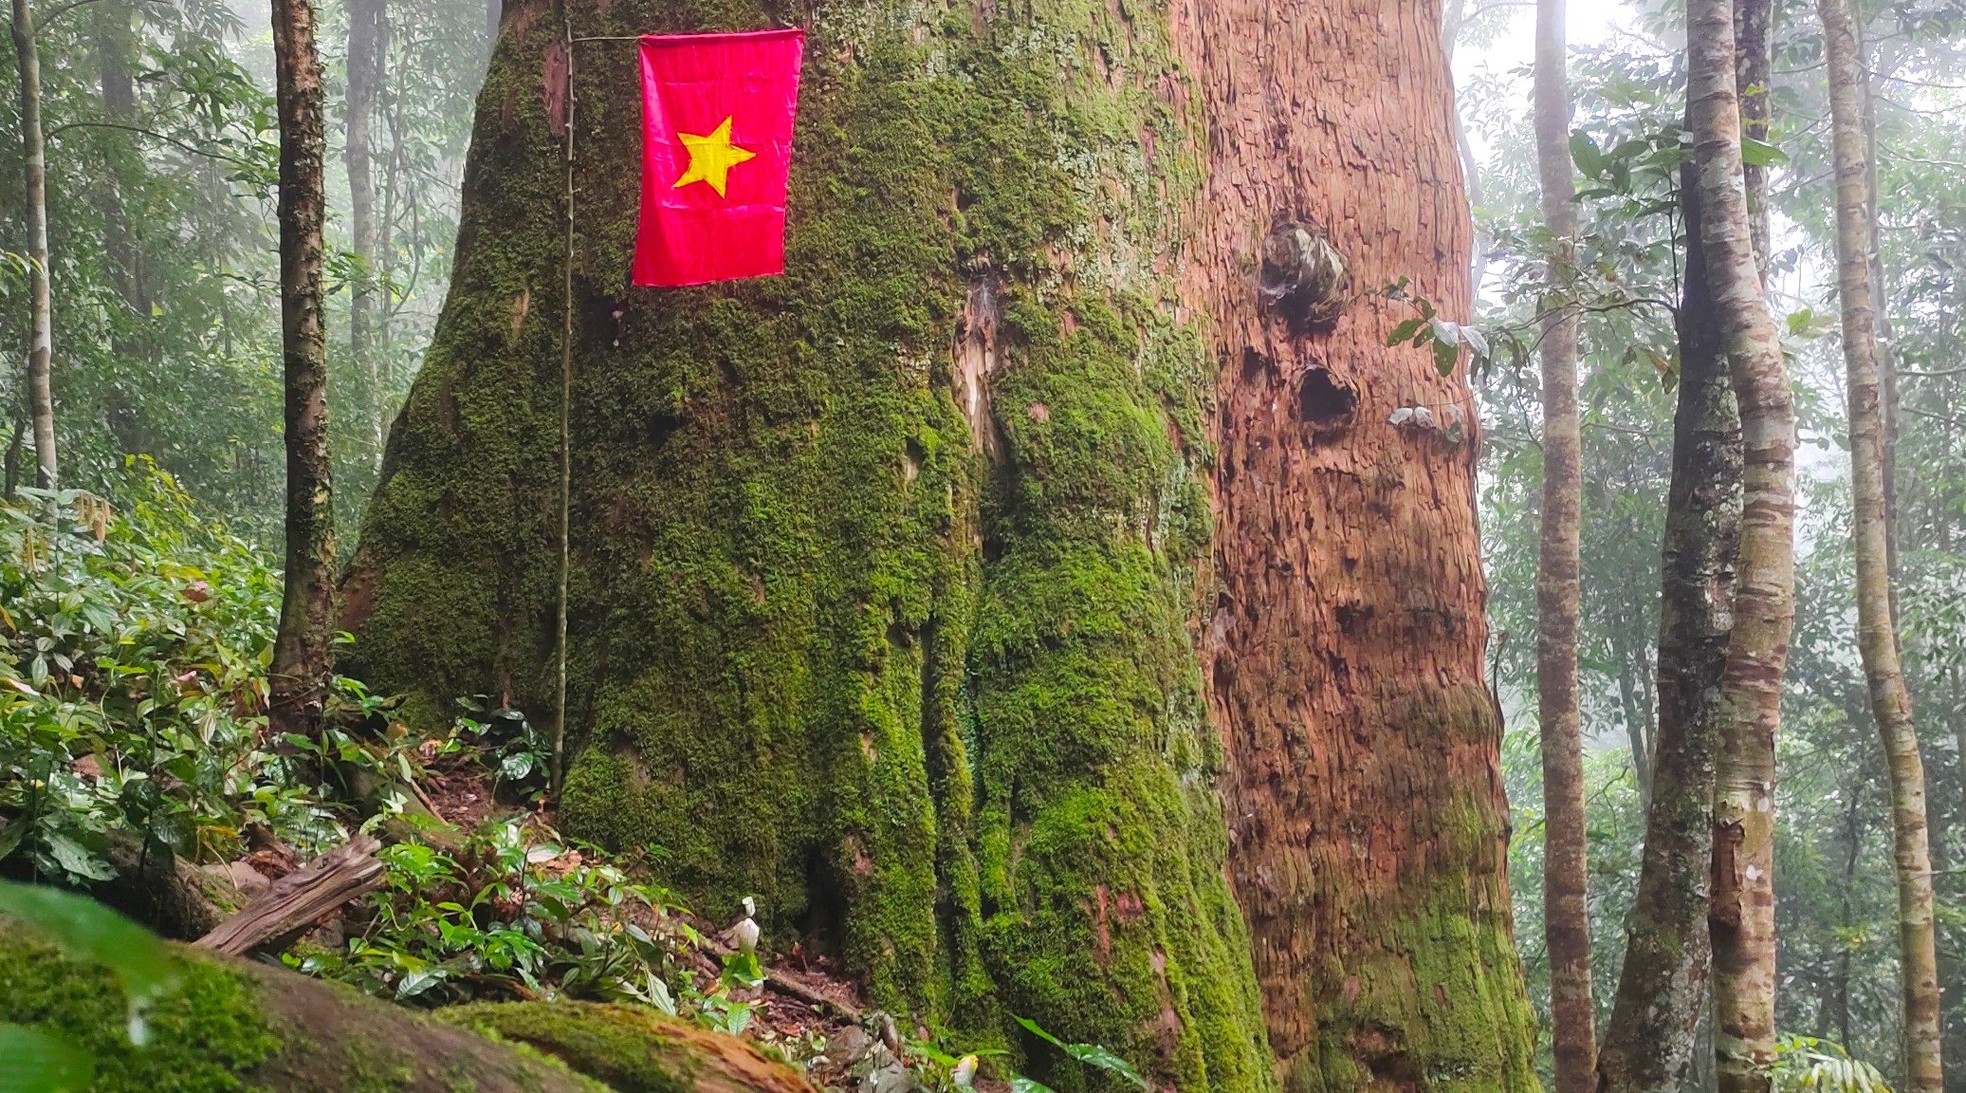 Ngắm cổ thụ Sa mu dầu hơn 2.000 tuổi trong lõi rừng già, được công nhận là cây di sản Việt Nam - Ảnh 7.